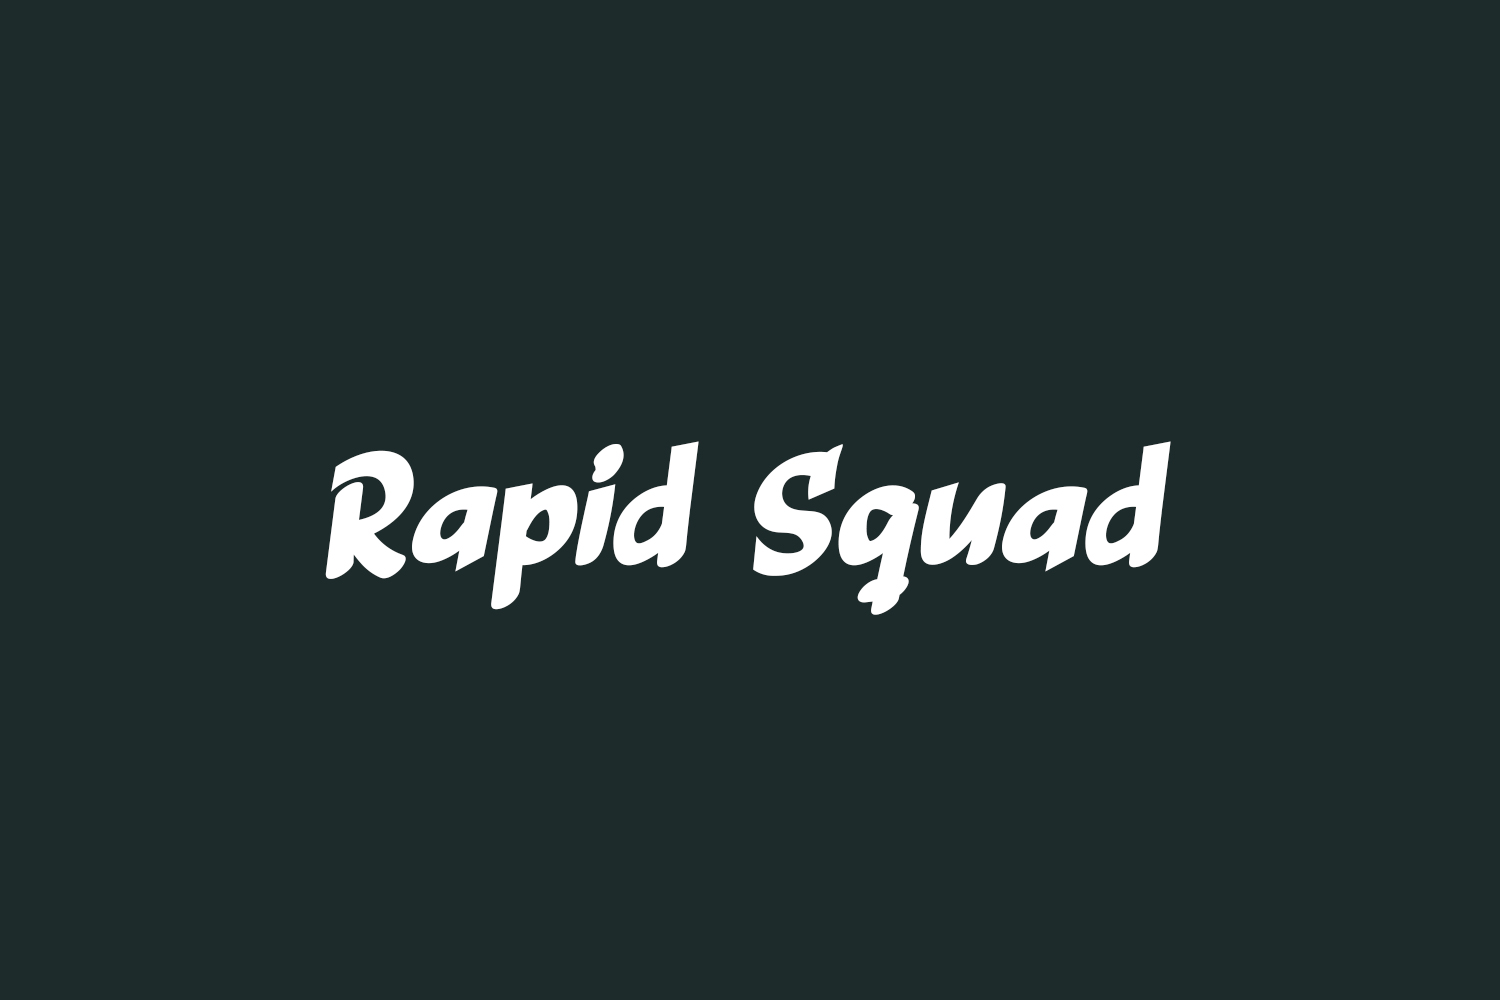 Rapid Squad Free Font